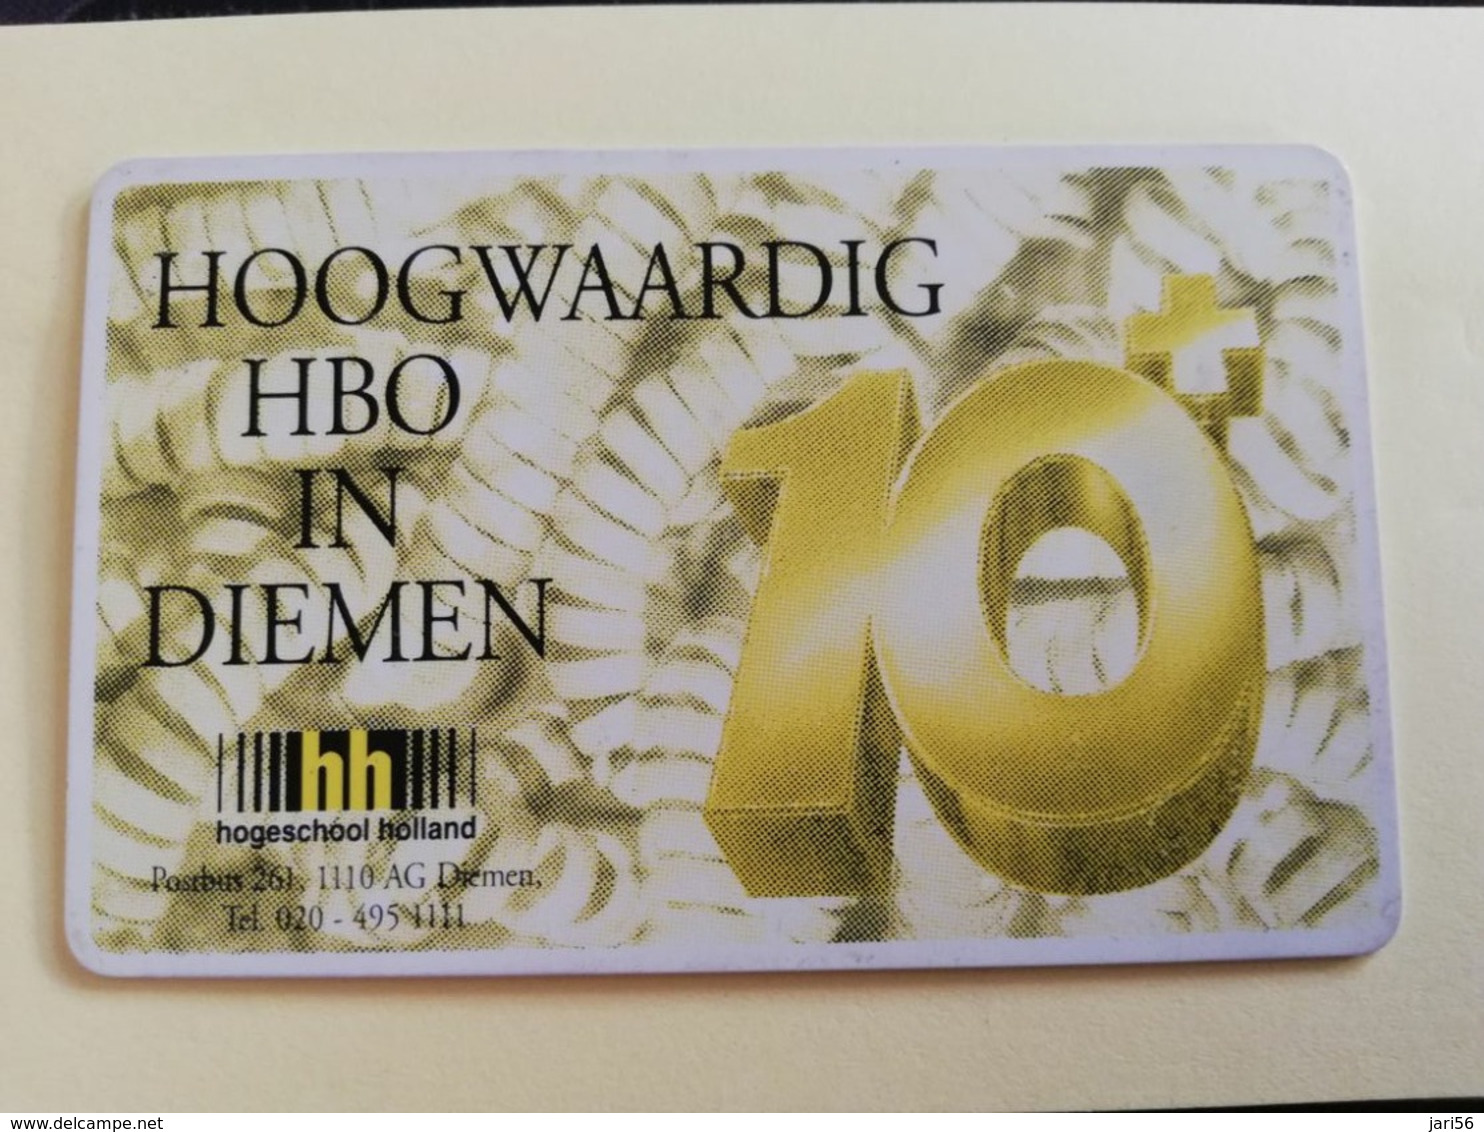 NETHERLANDS  ADVERTISING CHIPCARD HFL 5,00 CRE 131.02   HOOGWAARDIG HBO DIEMEN          Fine Used   ** 3188** - Privadas